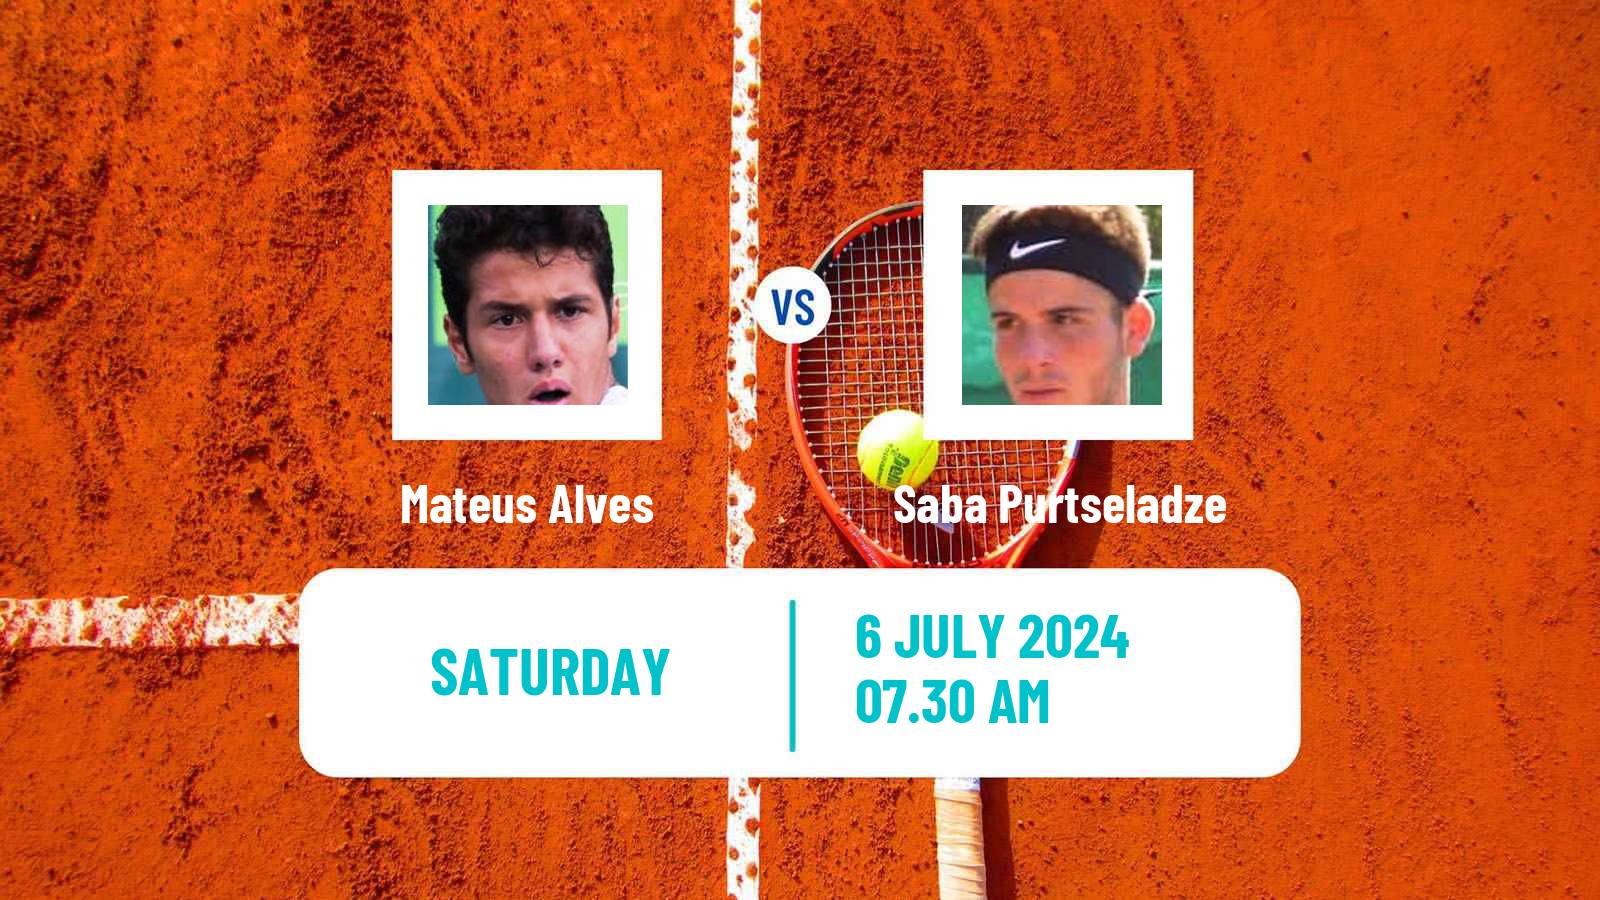 Tennis ITF M25 Marburg Men Mateus Alves - Saba Purtseladze